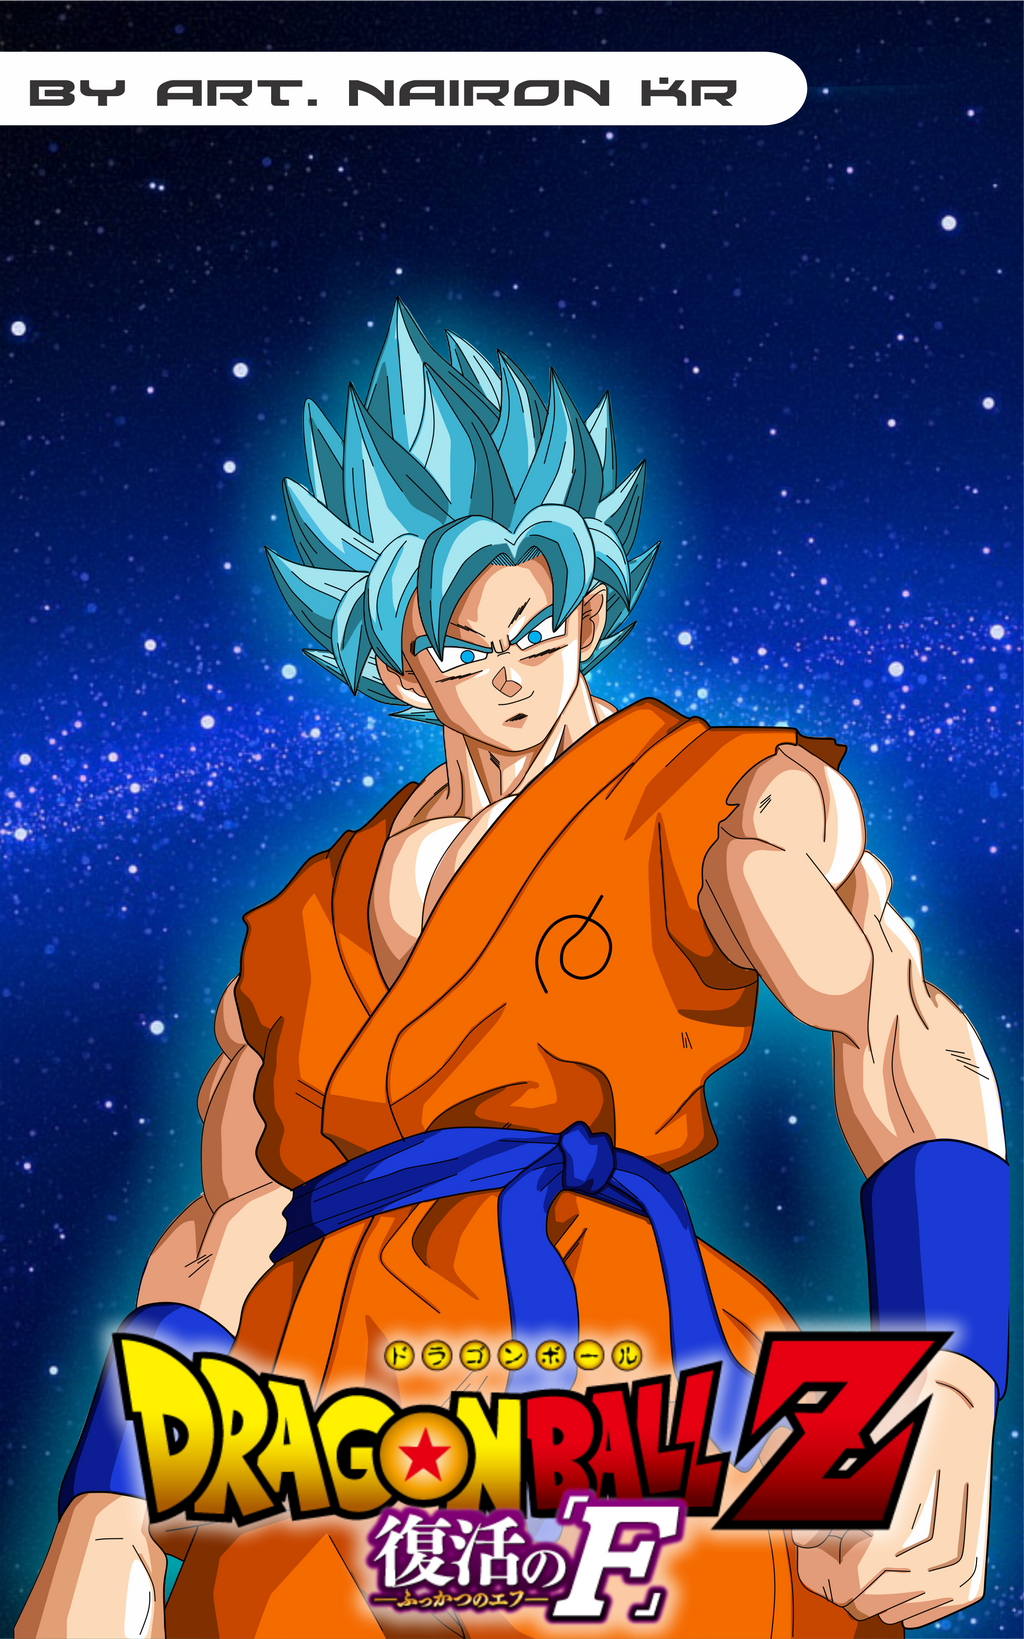 Goku Super Saiyajin Blue 100% by MaiagulCuon on DeviantArt